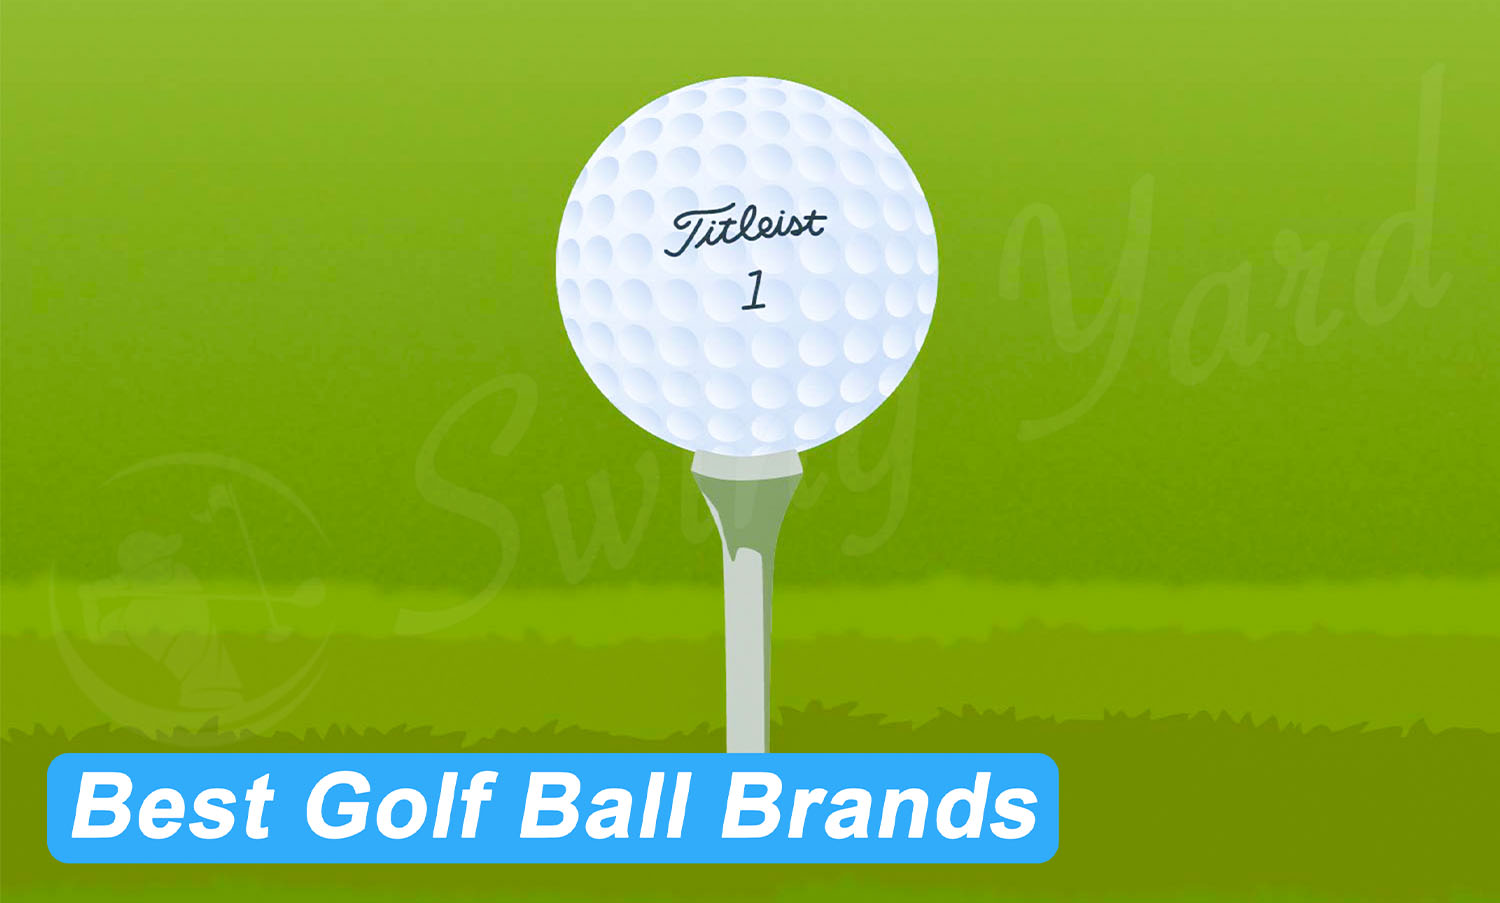 The best golf ball brand Titleist